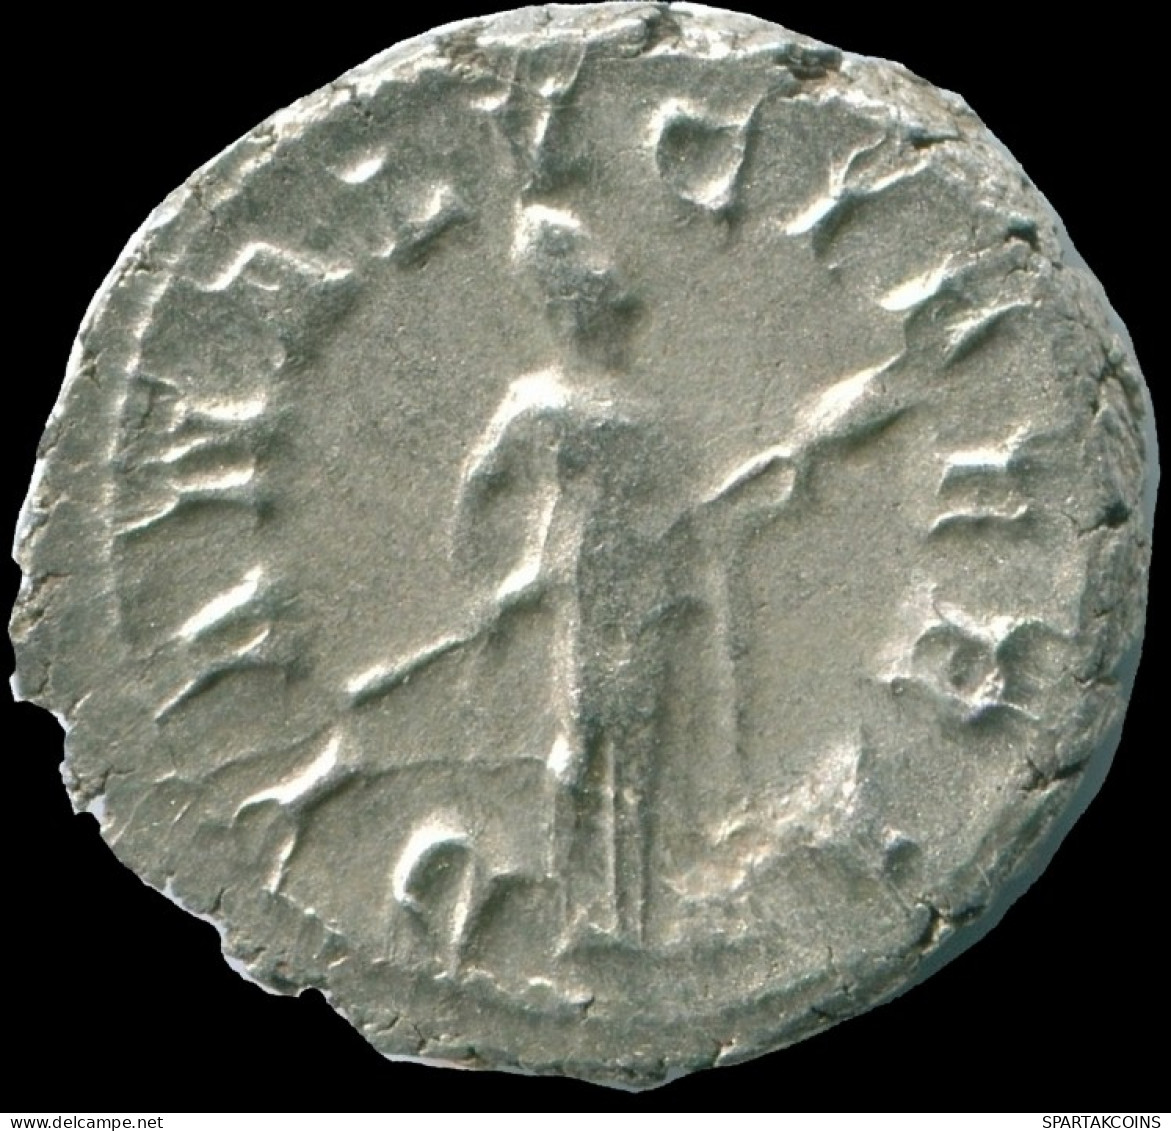 GORDIAN III AR DENARIUS ROME (7TH ISSUE. 1ST OFFICINA) DIANA #ANC13046.84.D.A - Der Soldatenkaiser (die Militärkrise) (235 / 284)